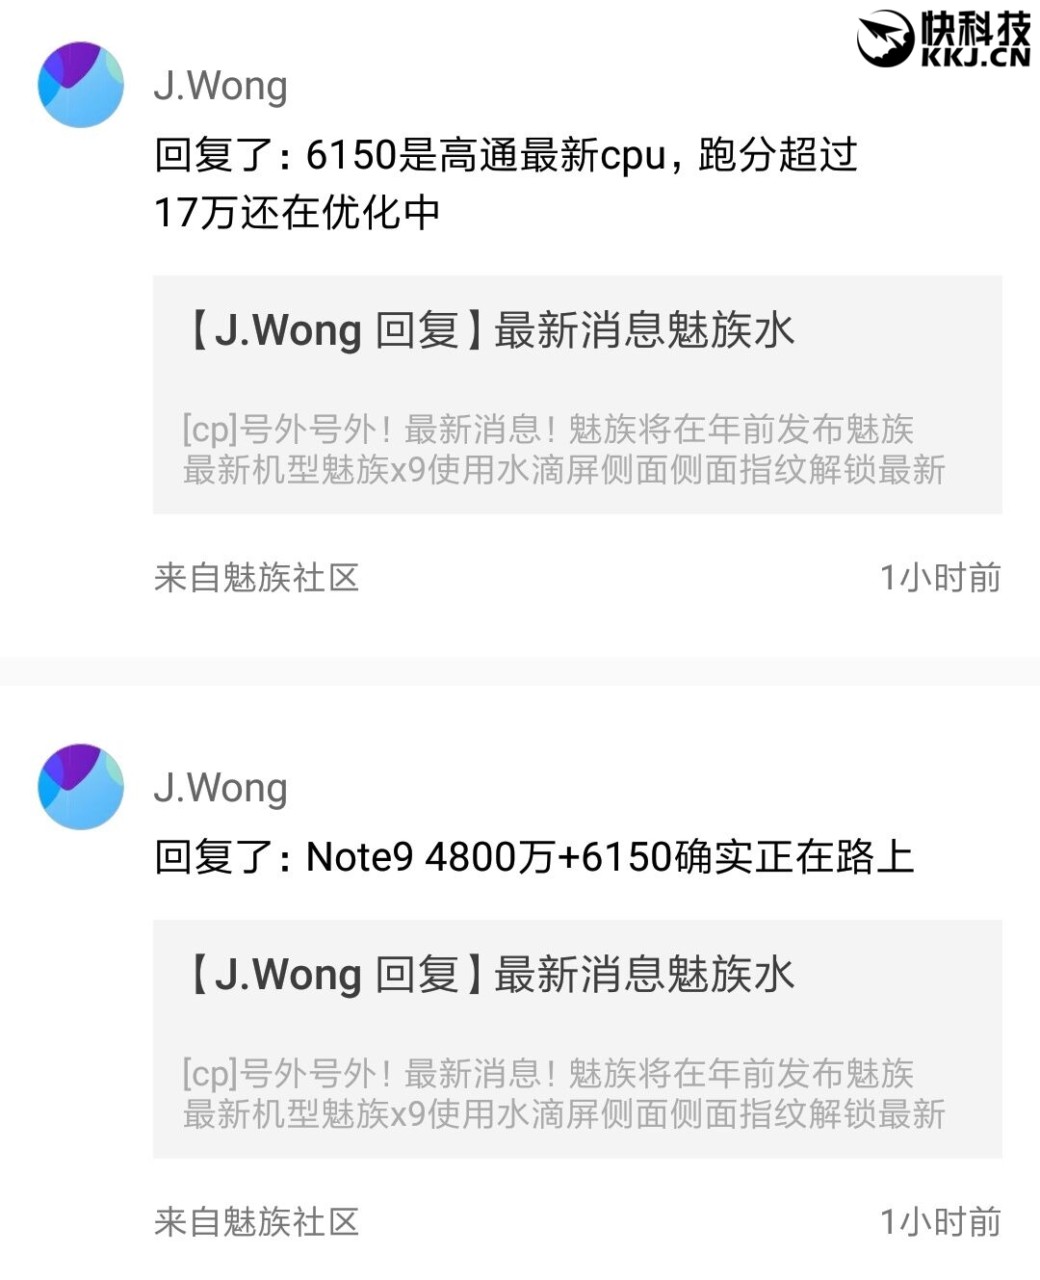 Meizu Note 9 Leak